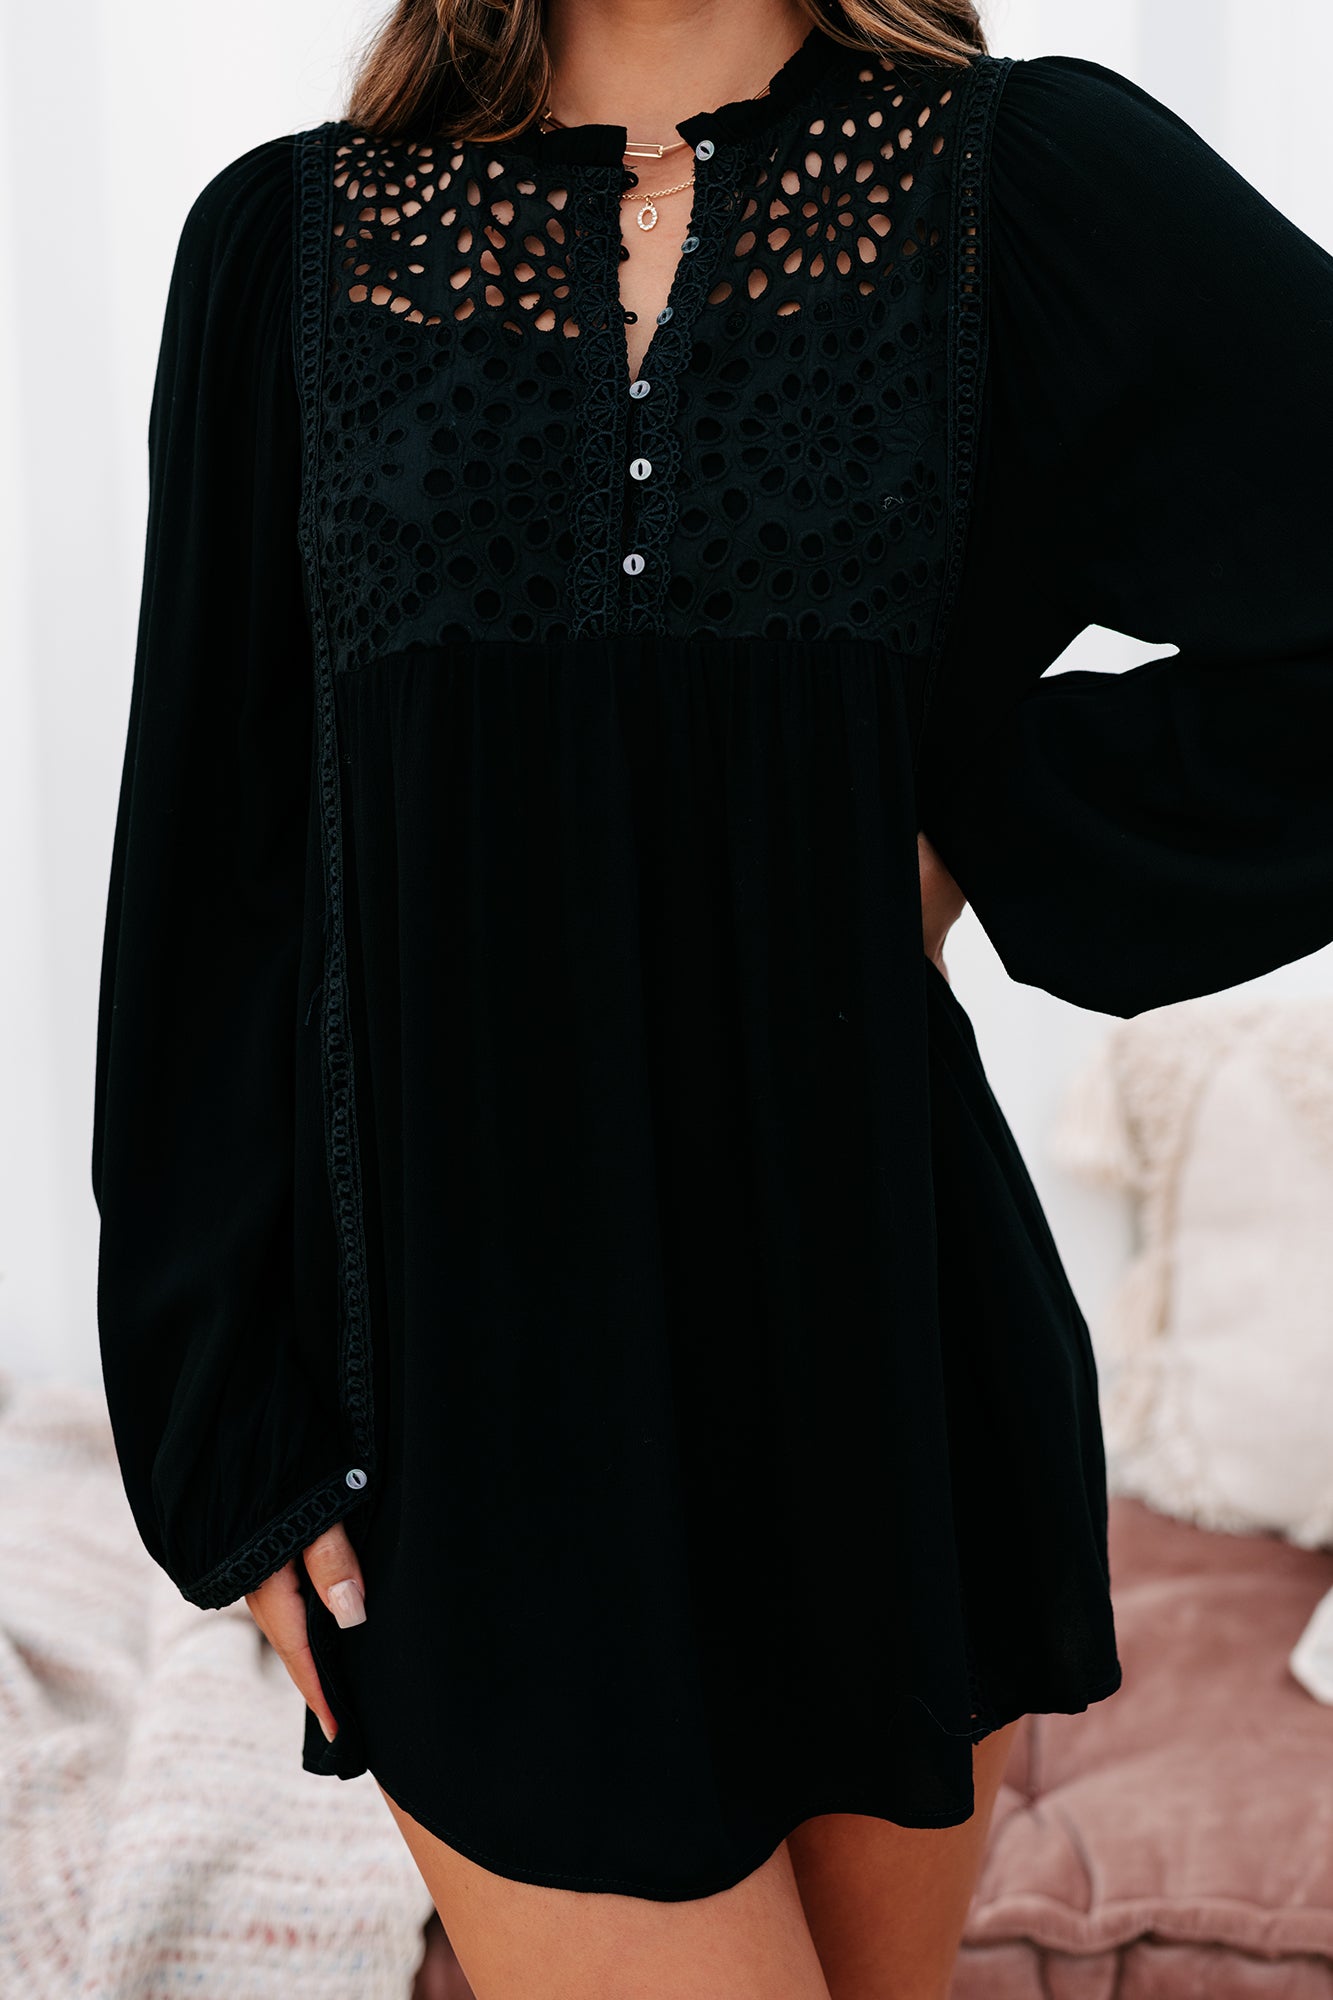 Afternoon Abroad Long Sleeved Eyelet Tunic/Dress (Black) - NanaMacs